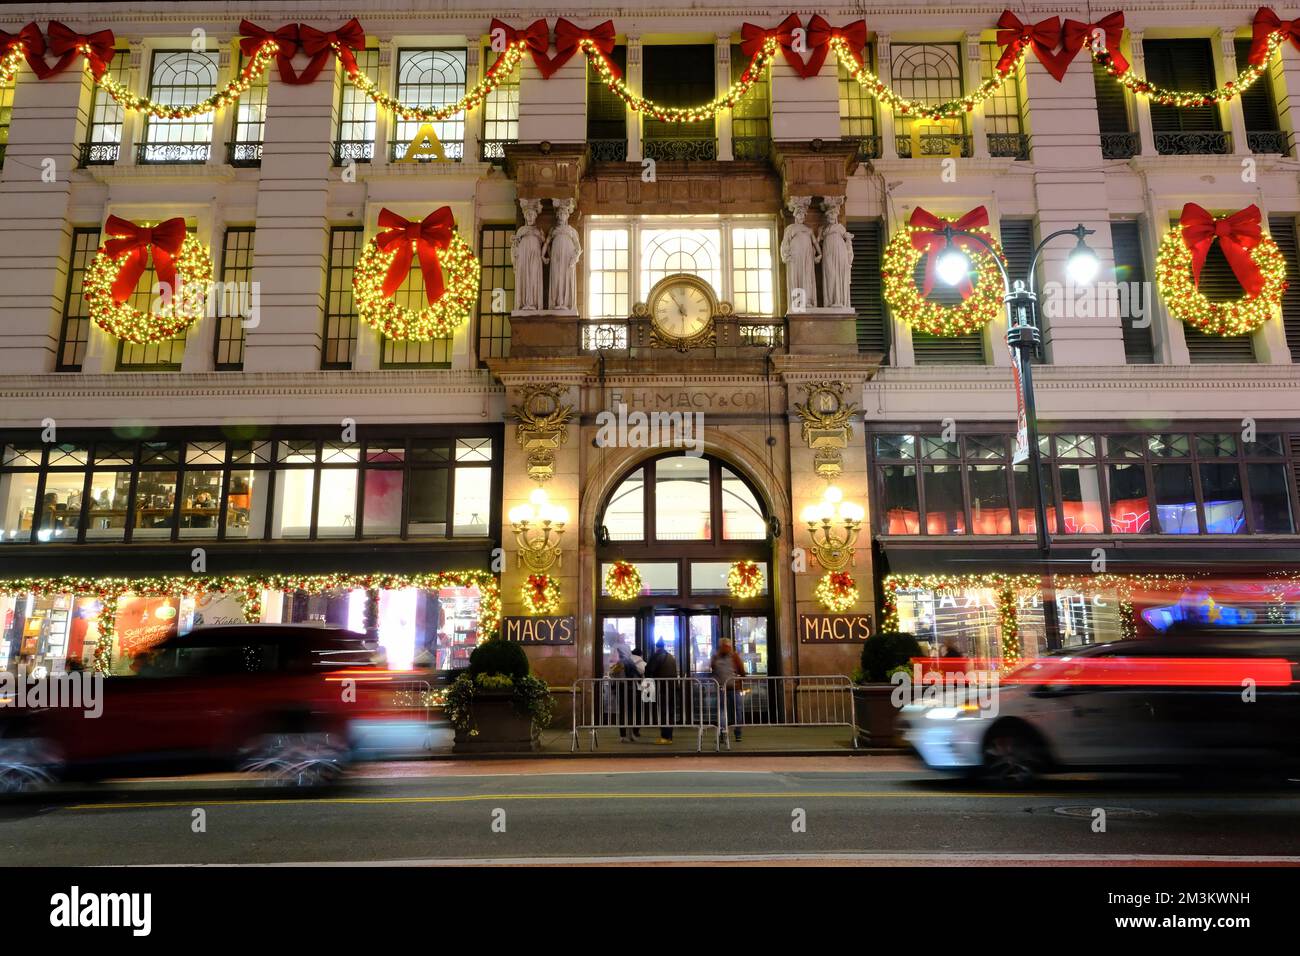 Decorazioni delle luci natalizie sulla facciata del grande magazzino Macy's nel centro di Manhattan. New York City.USA Foto Stock